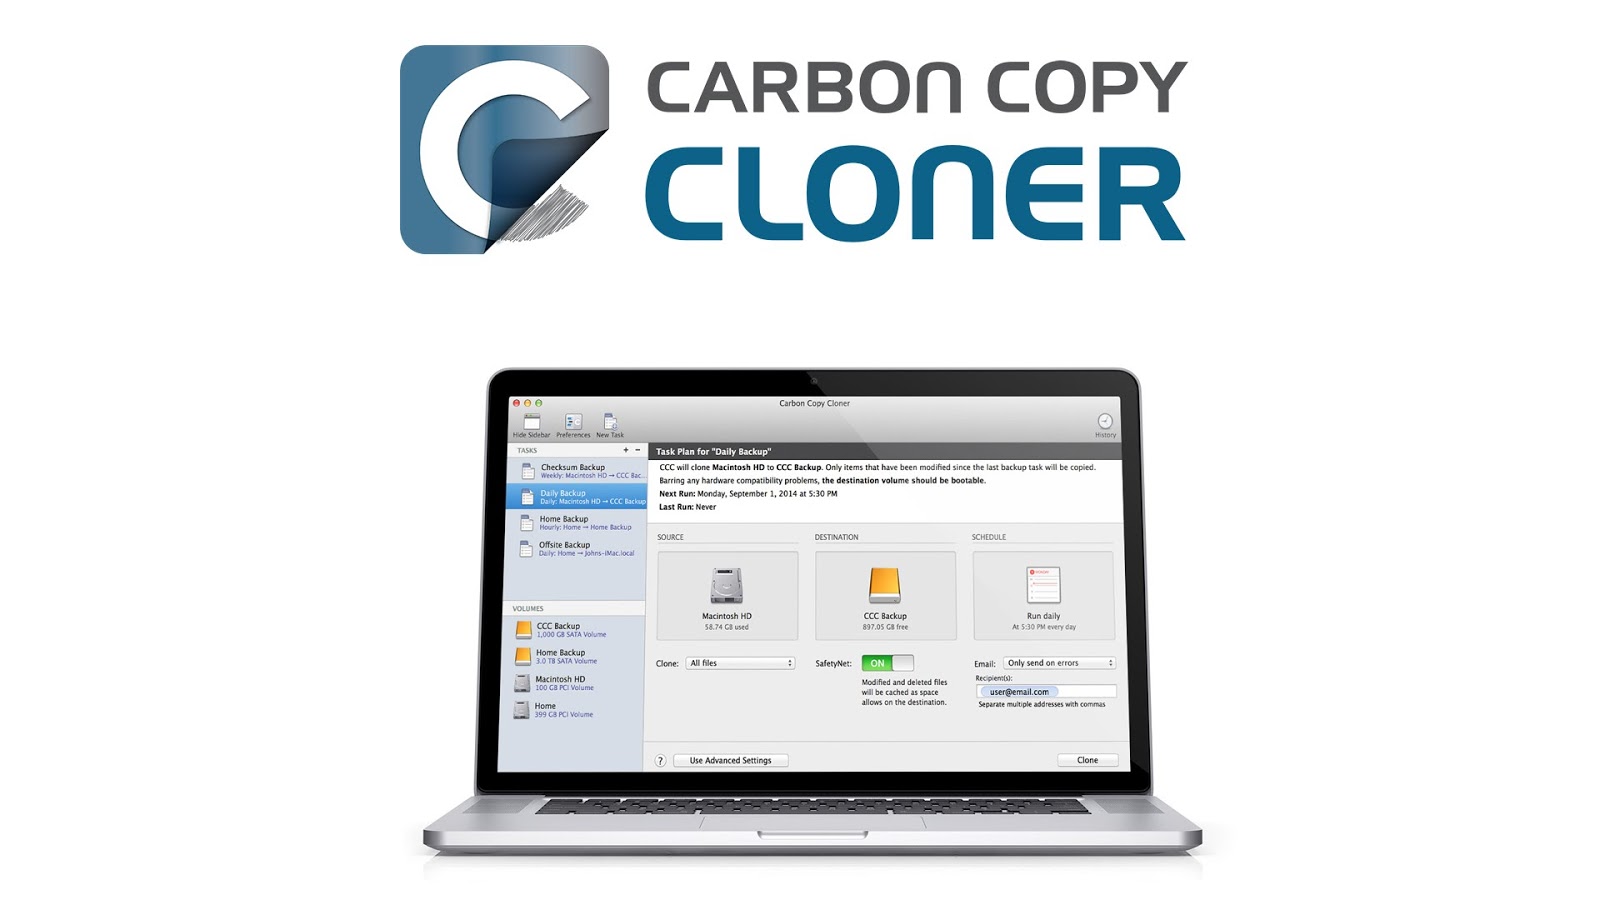 Carbon copy cloner 3.5 7 serial number